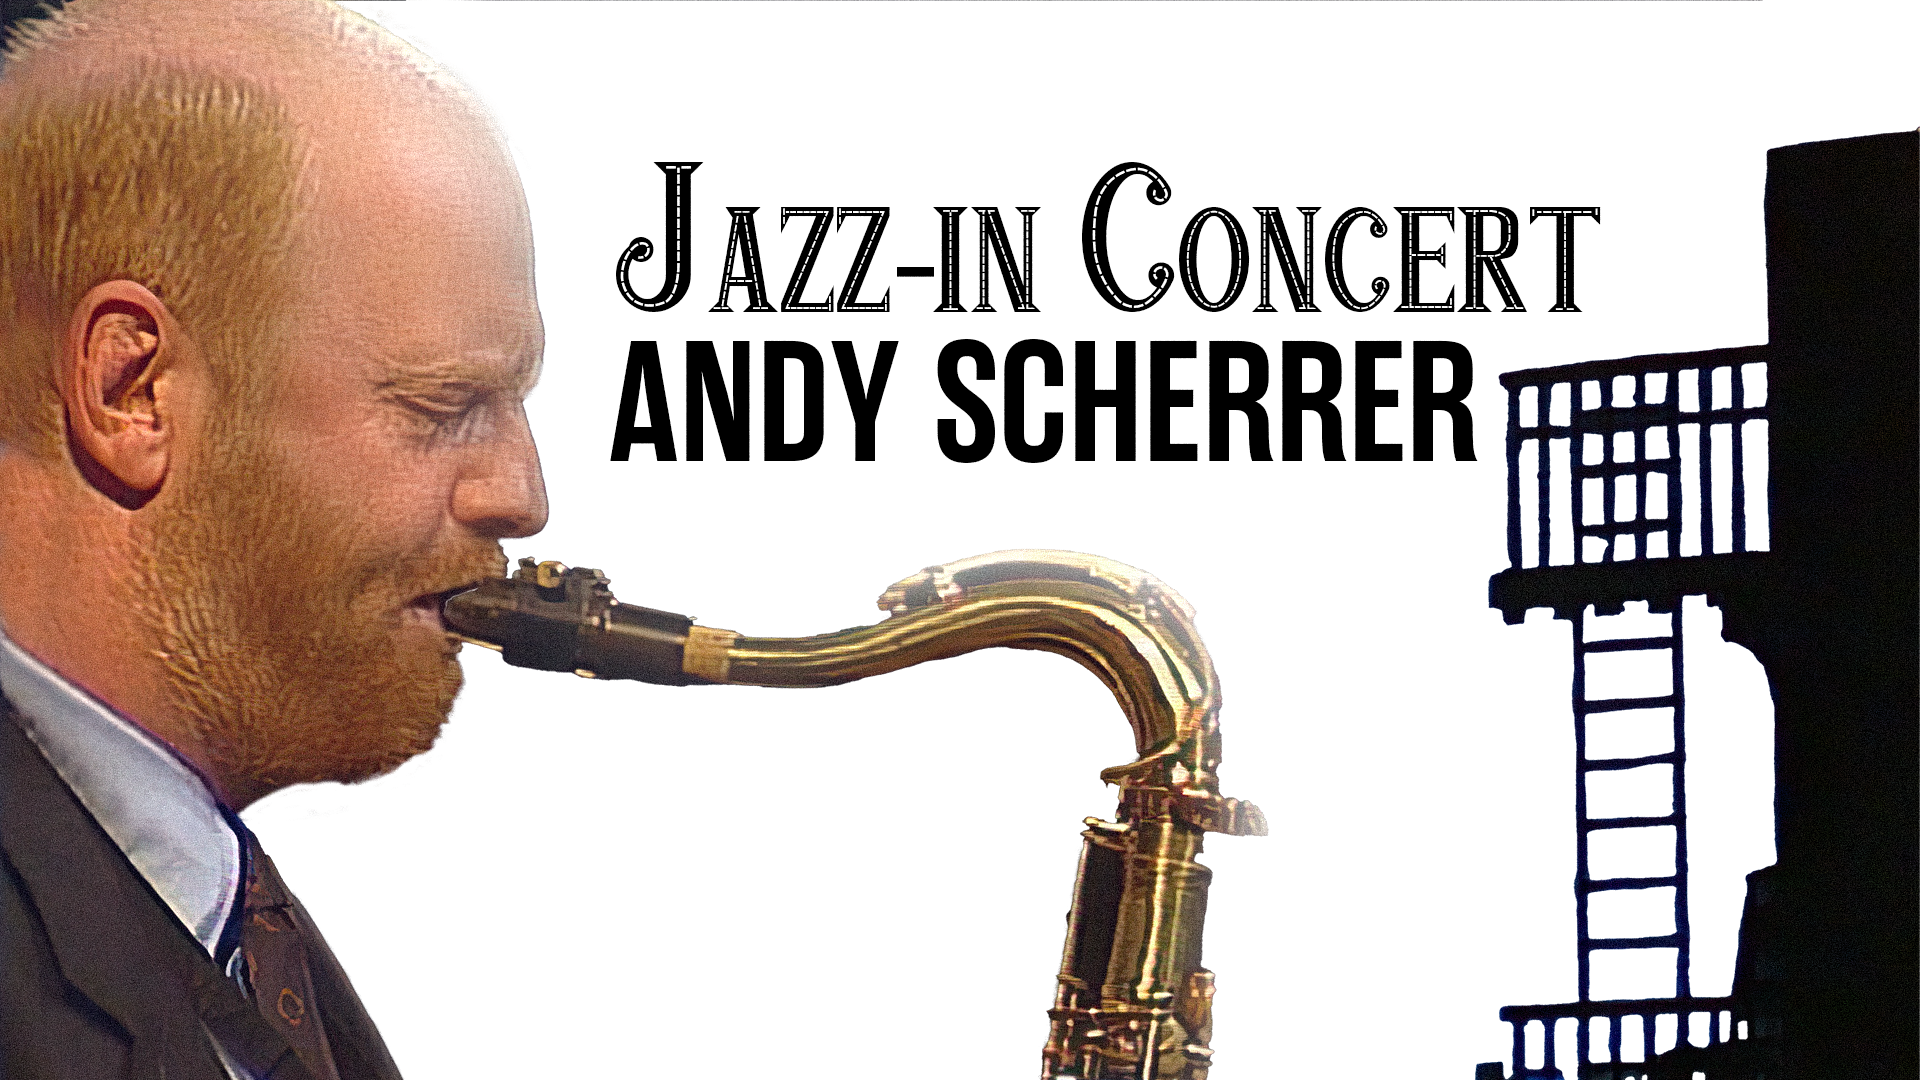 Jazz-in Concert - Andy Scherrer